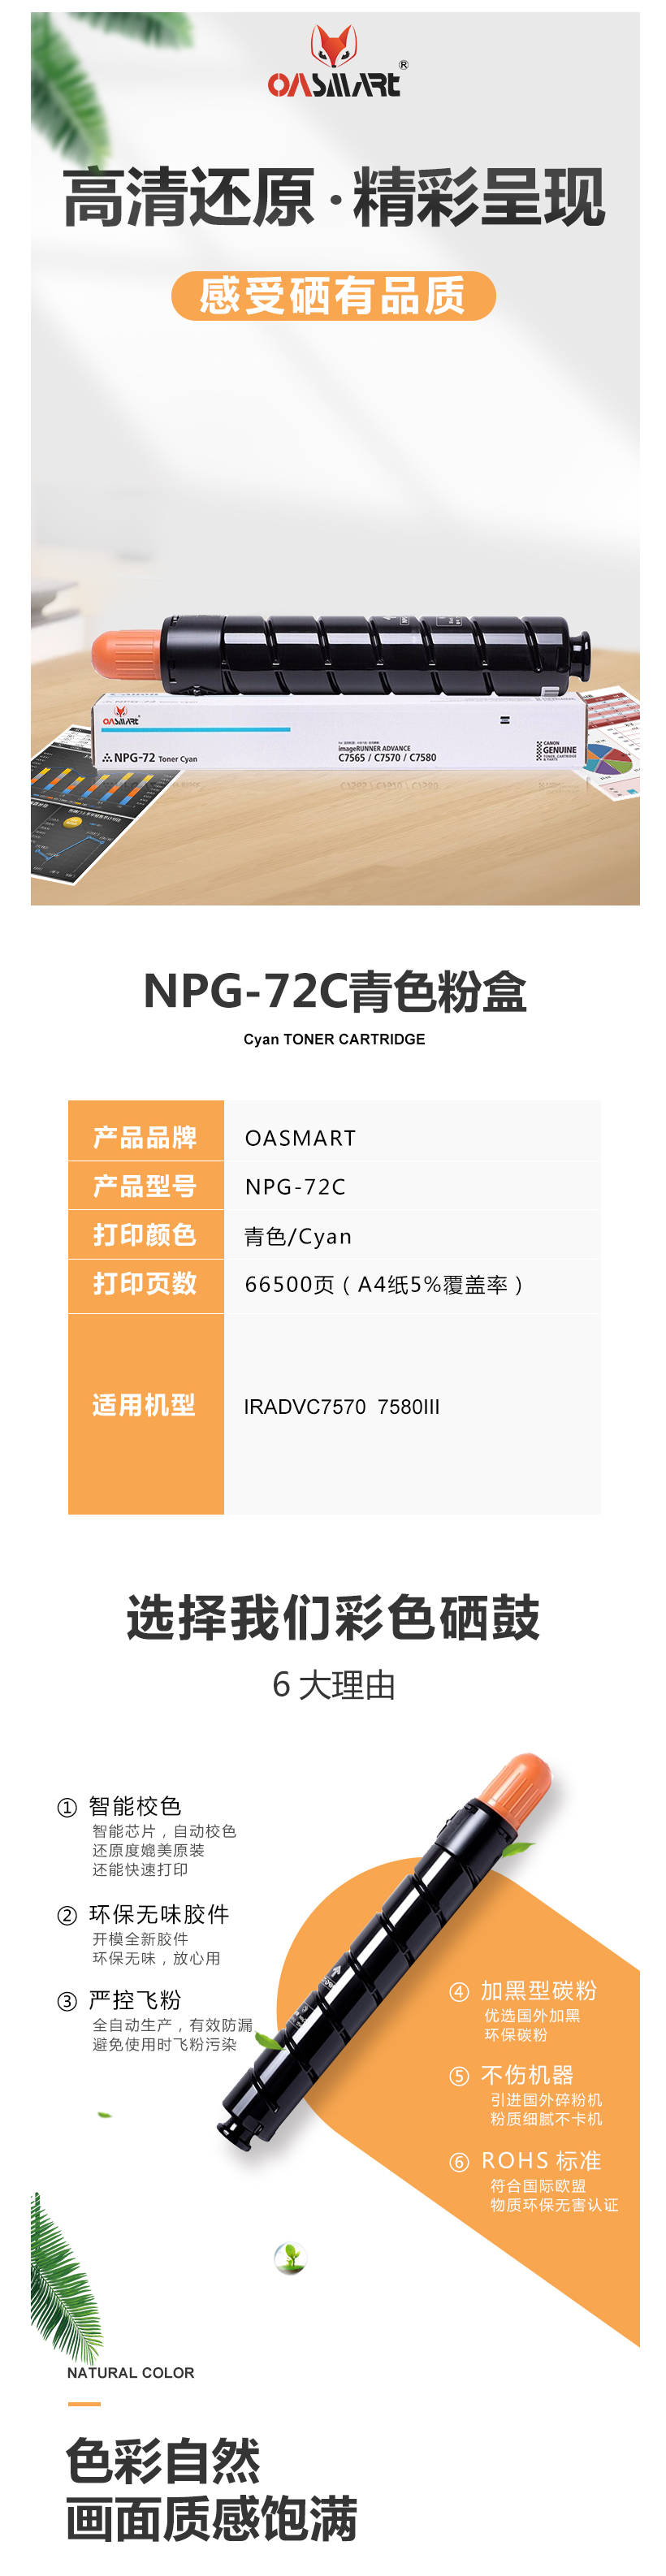 FireShot Capture 356 - 【OASMARTNPG-72C】OASMART（欧司特）NPG-72 C_ - https___item.jd.com_100020629938.html.png